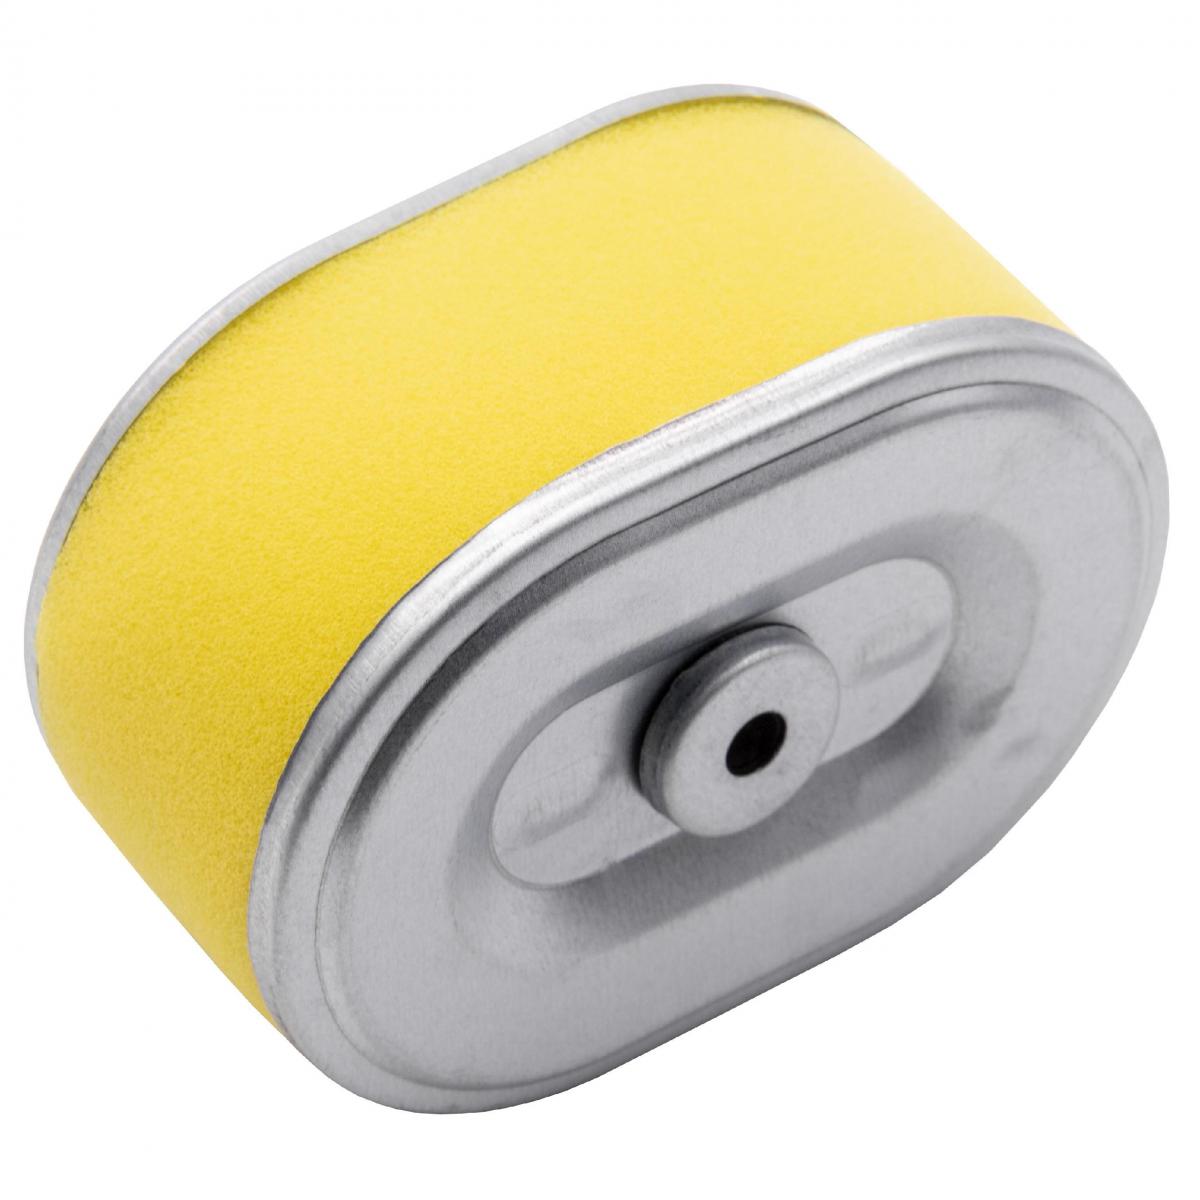 Vhbw - vhbw Filtre à air avec préfiltre de rechange jaune, argent remplace Stens 100-958 compatible avec tondeuse à gazon; 10,1 x 7,2 x 5,1cm - Accessoires tondeuses